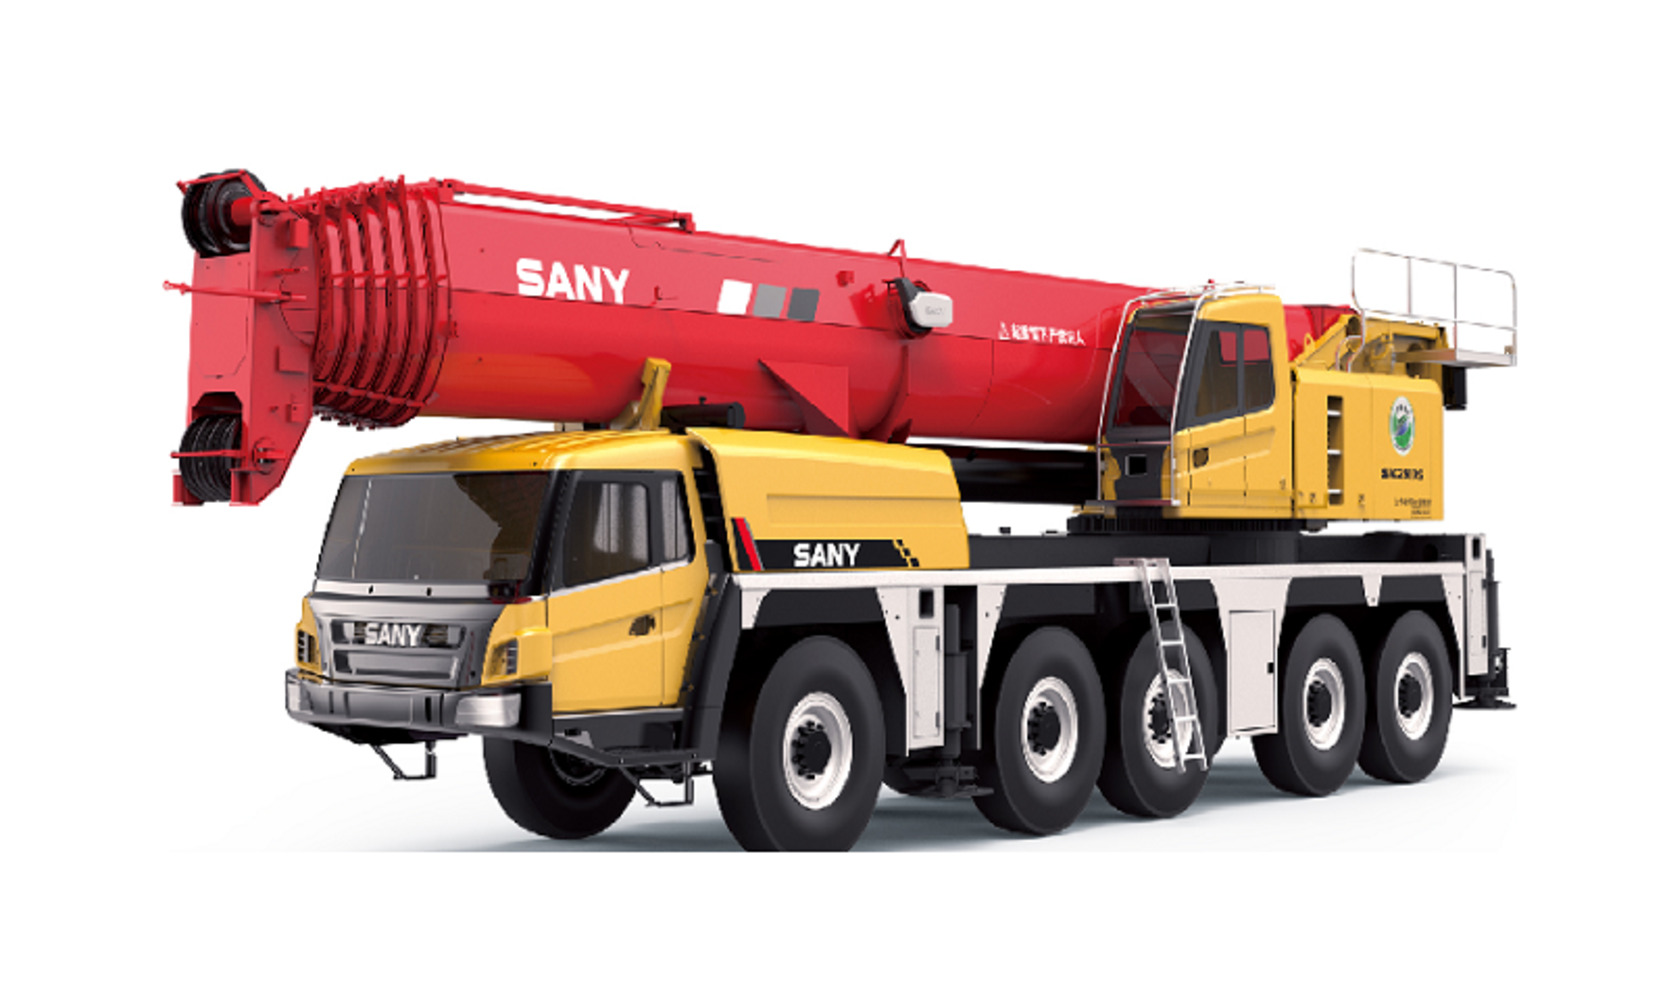 Автокран вездеход Palfinger Sany SAC2500S 250 тонн, 73 метра